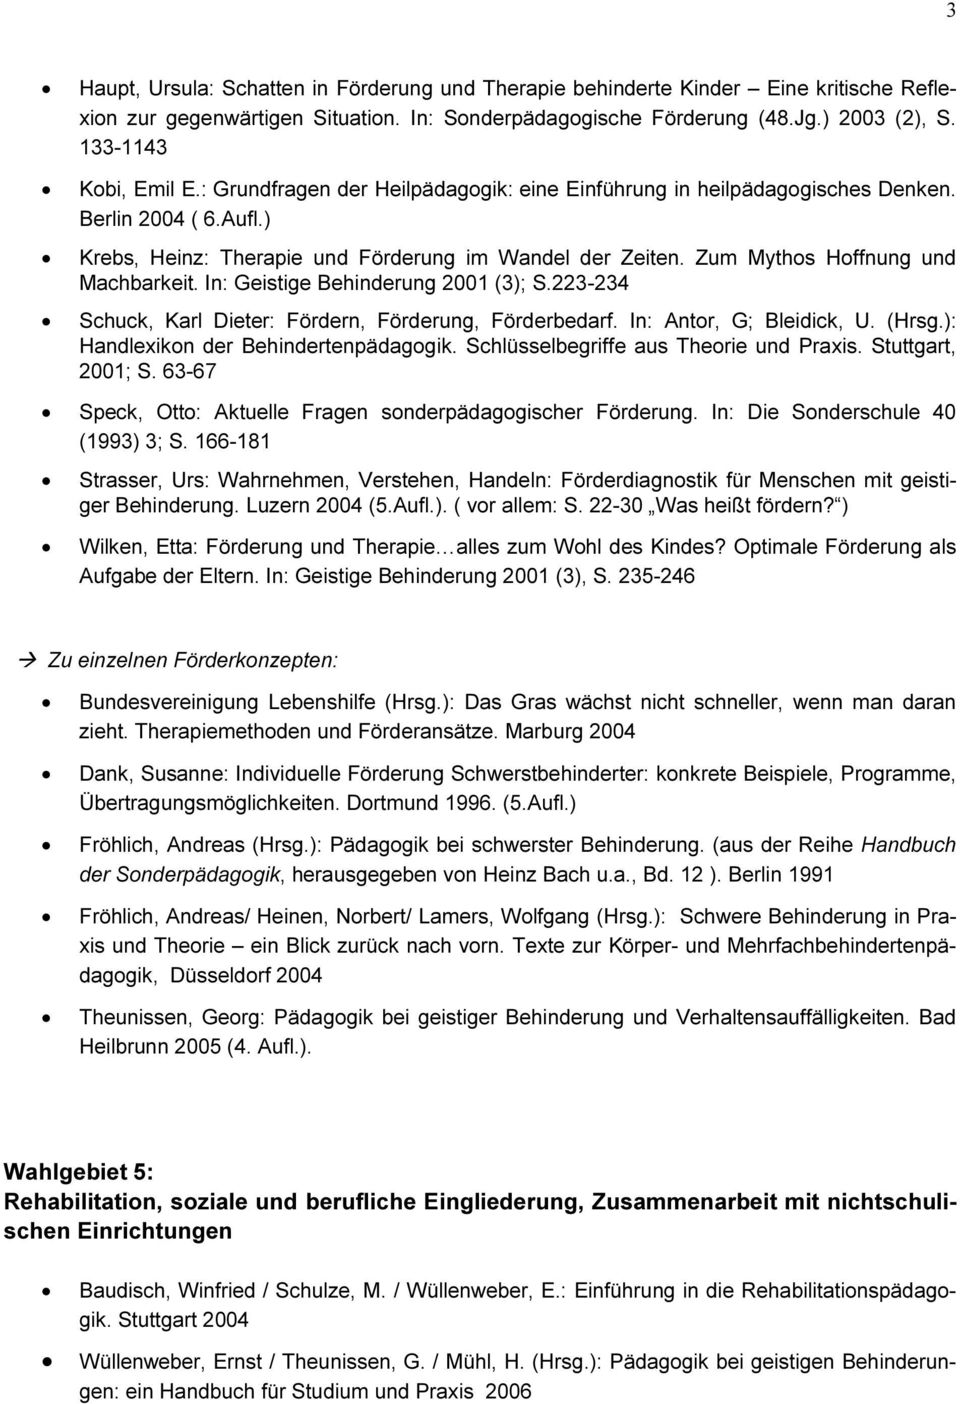 Zum Mythos Hoffnung und Machbarkeit. In: Geistige Behinderung 2001 (3); S.223-234 Schuck, Karl Dieter: Fördern, Förderung, Förderbedarf. In: Antor, G; Bleidick, U. (Hrsg.